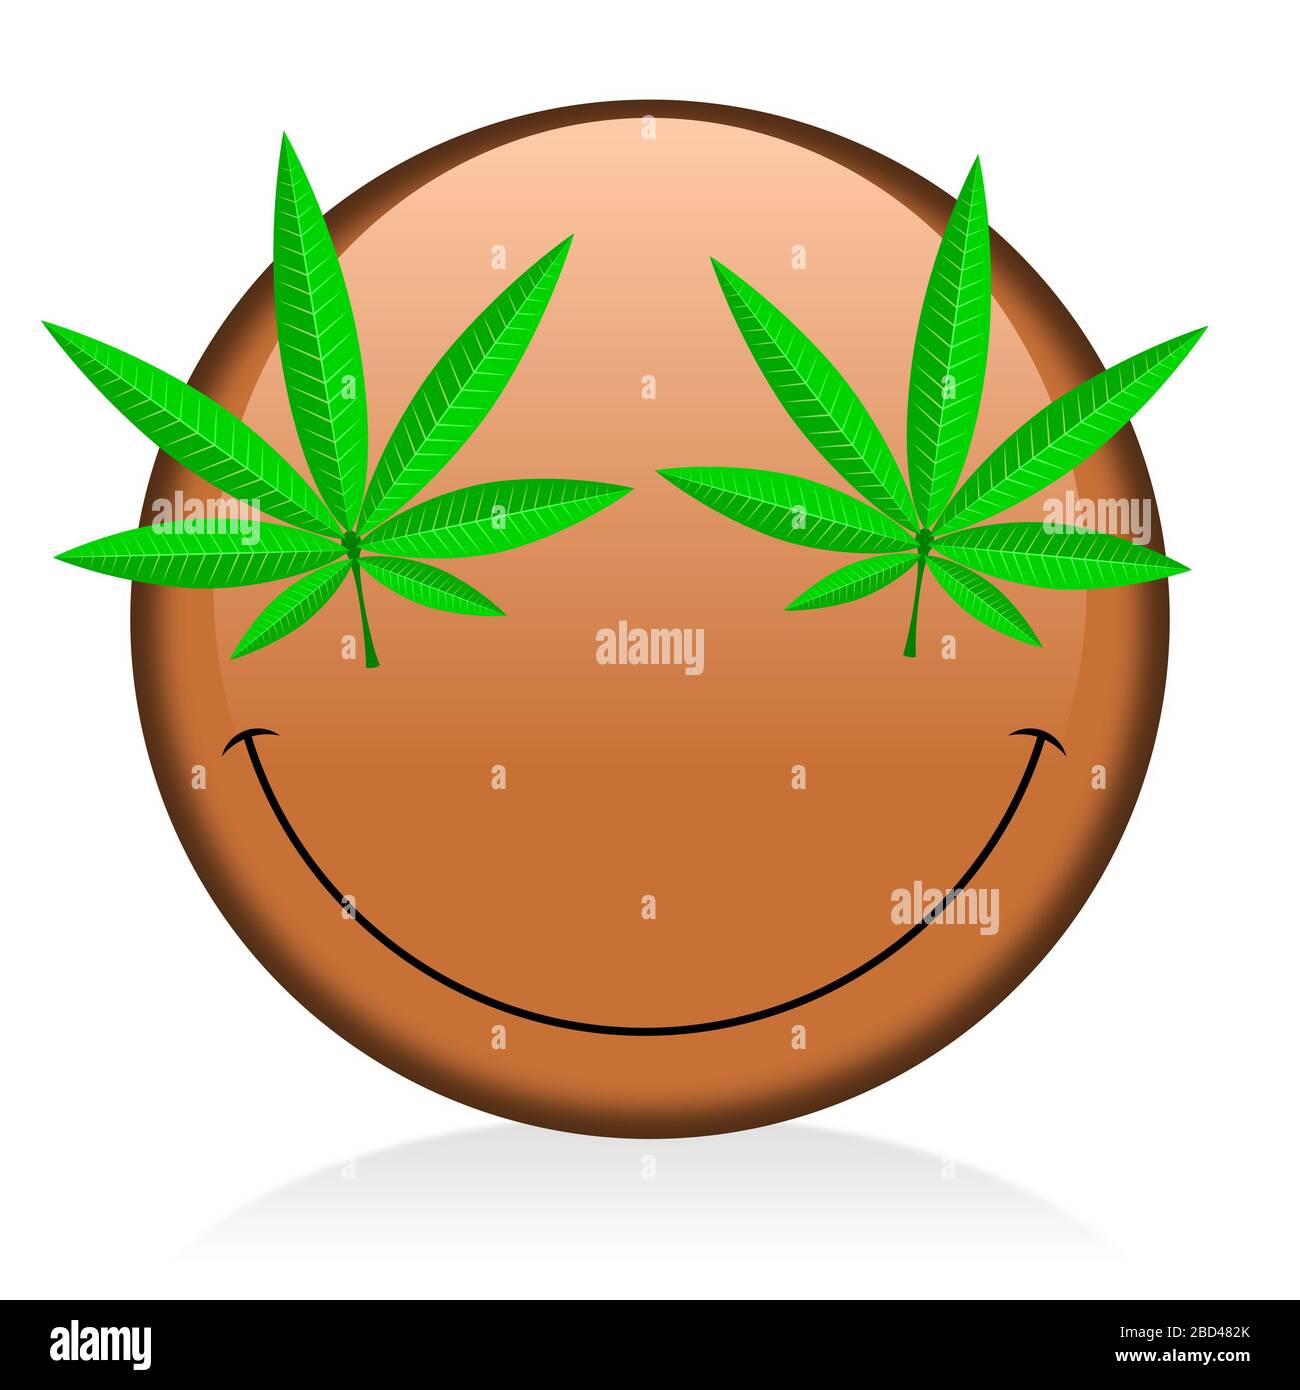 Emoji - smoking weed Stock Photo - Alamy